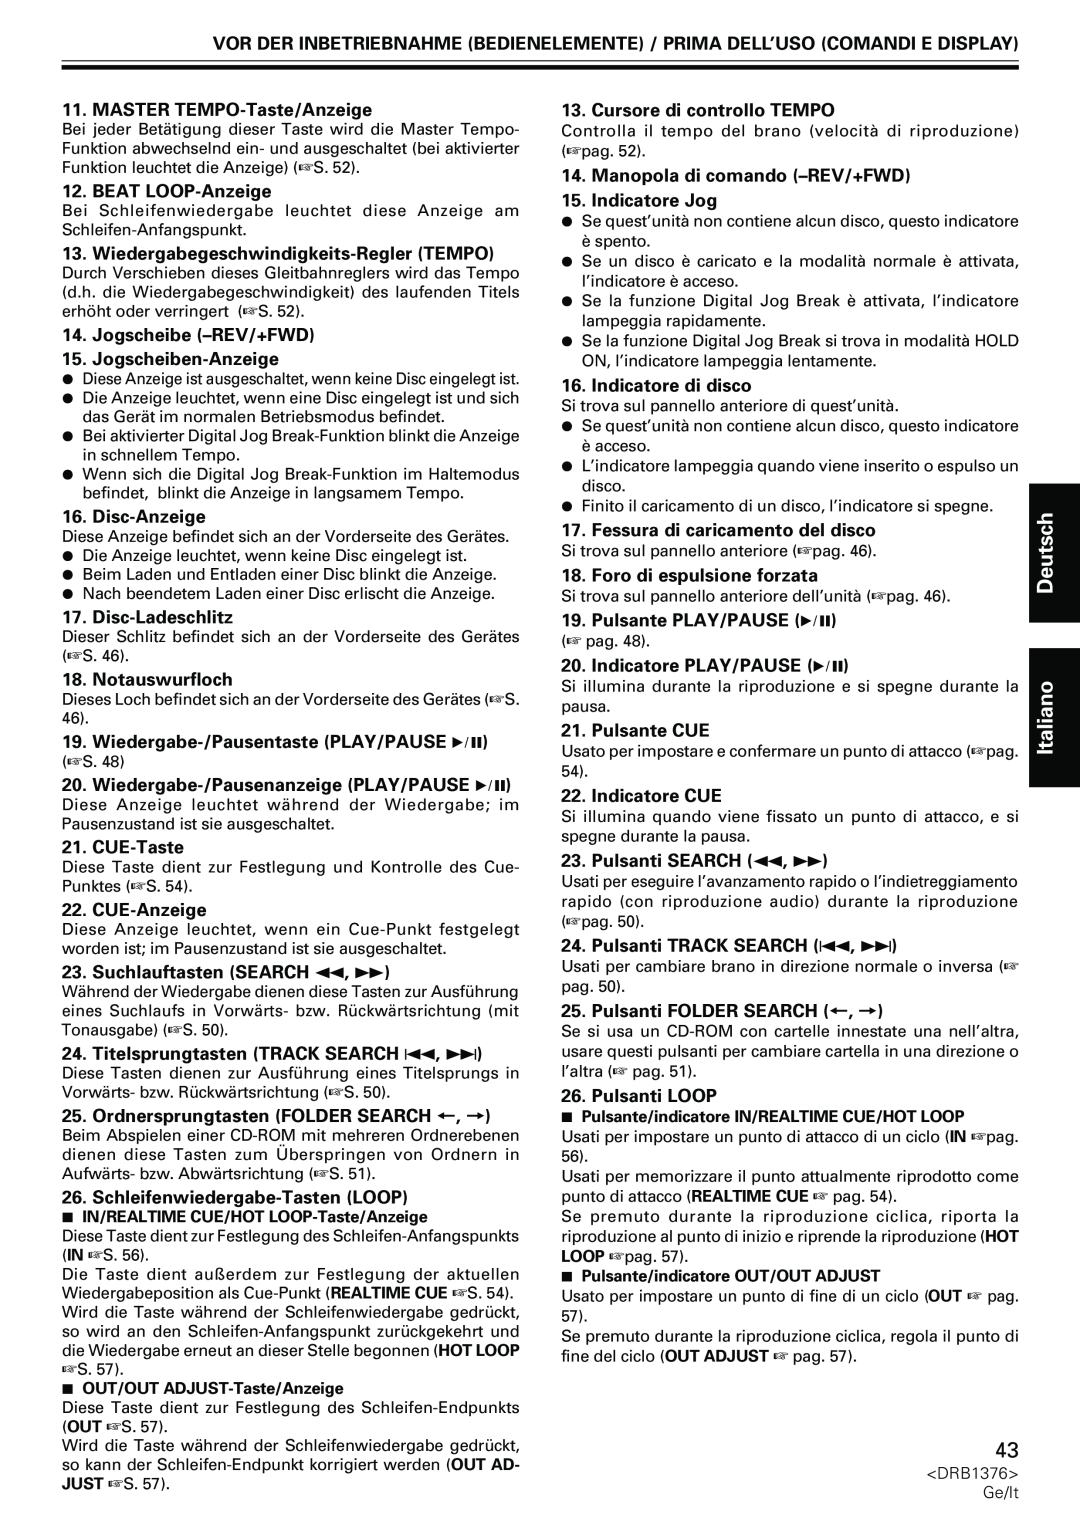 Pioneer CDJ-200 manual MASTER TEMPO-Taste/Anzeige, BEAT LOOP-Anzeige, Wiedergabegeschwindigkeits-ReglerTEMPO, Disc-Anzeige 